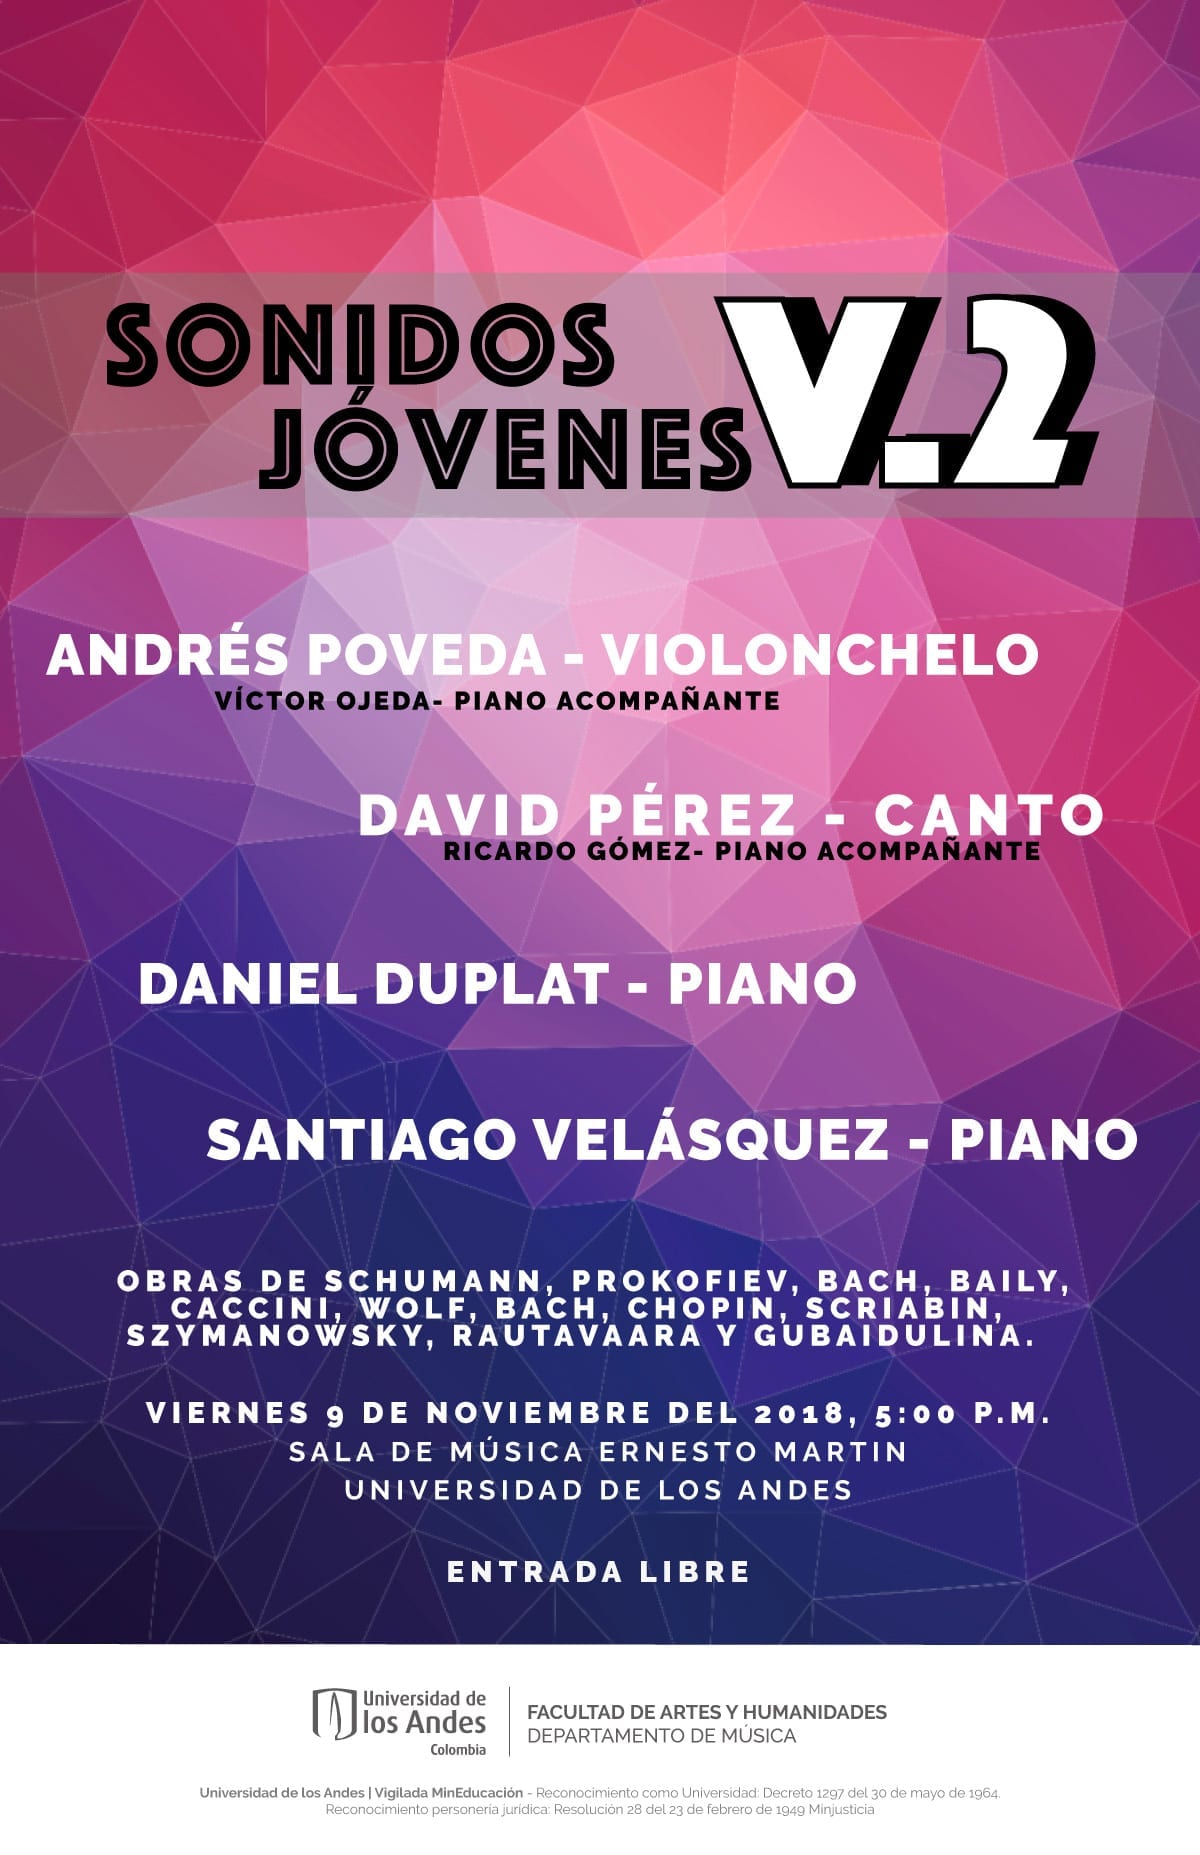 Andrés Poveda, violonchelo, David Pérez, canto, Daniel Duplat, piano y Santiago Velásquez, piano, se presentan en el tercer concierto de Sonidos Jóvenes.